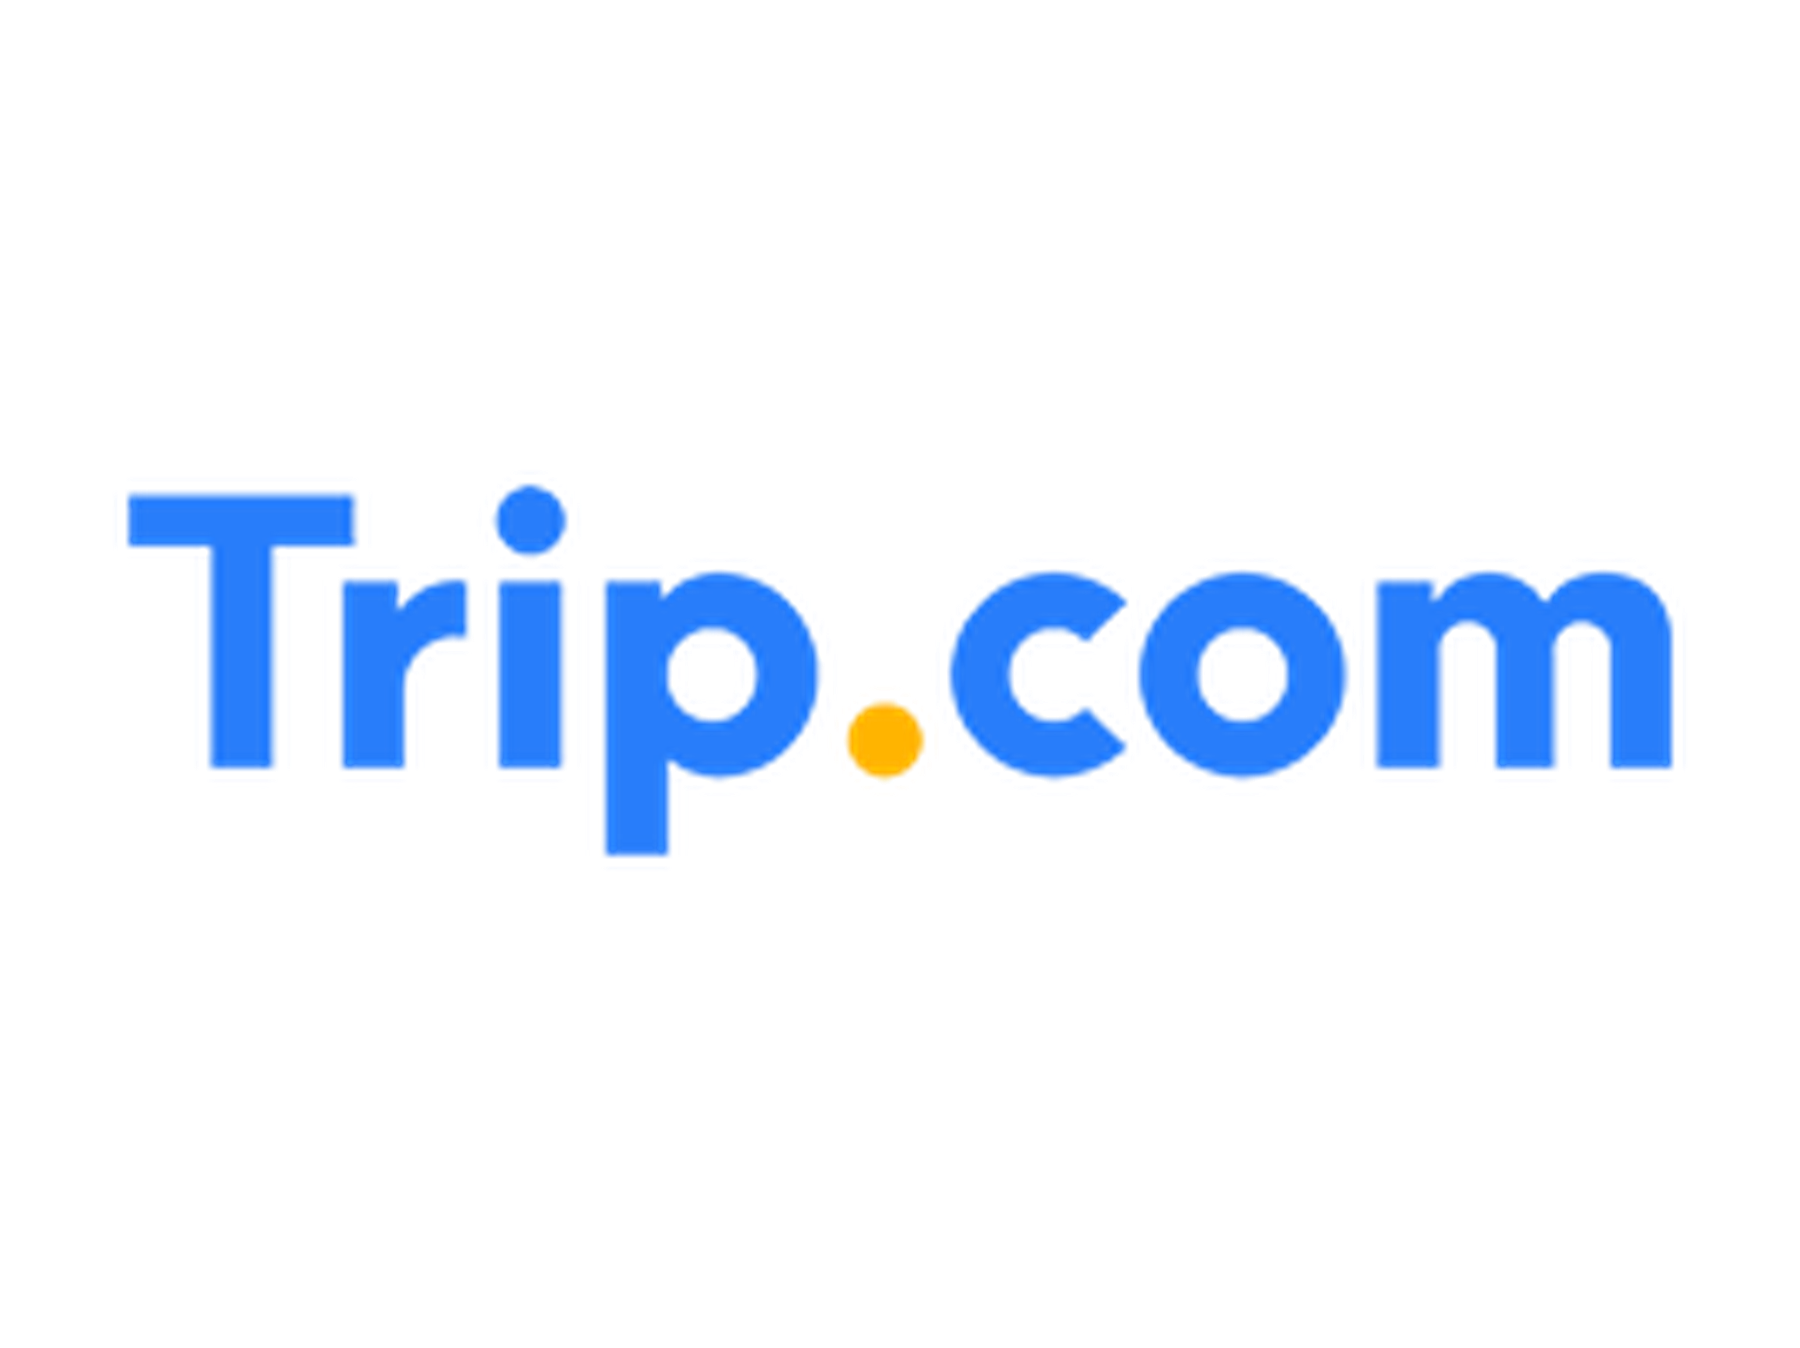 Código promocional Trip.com